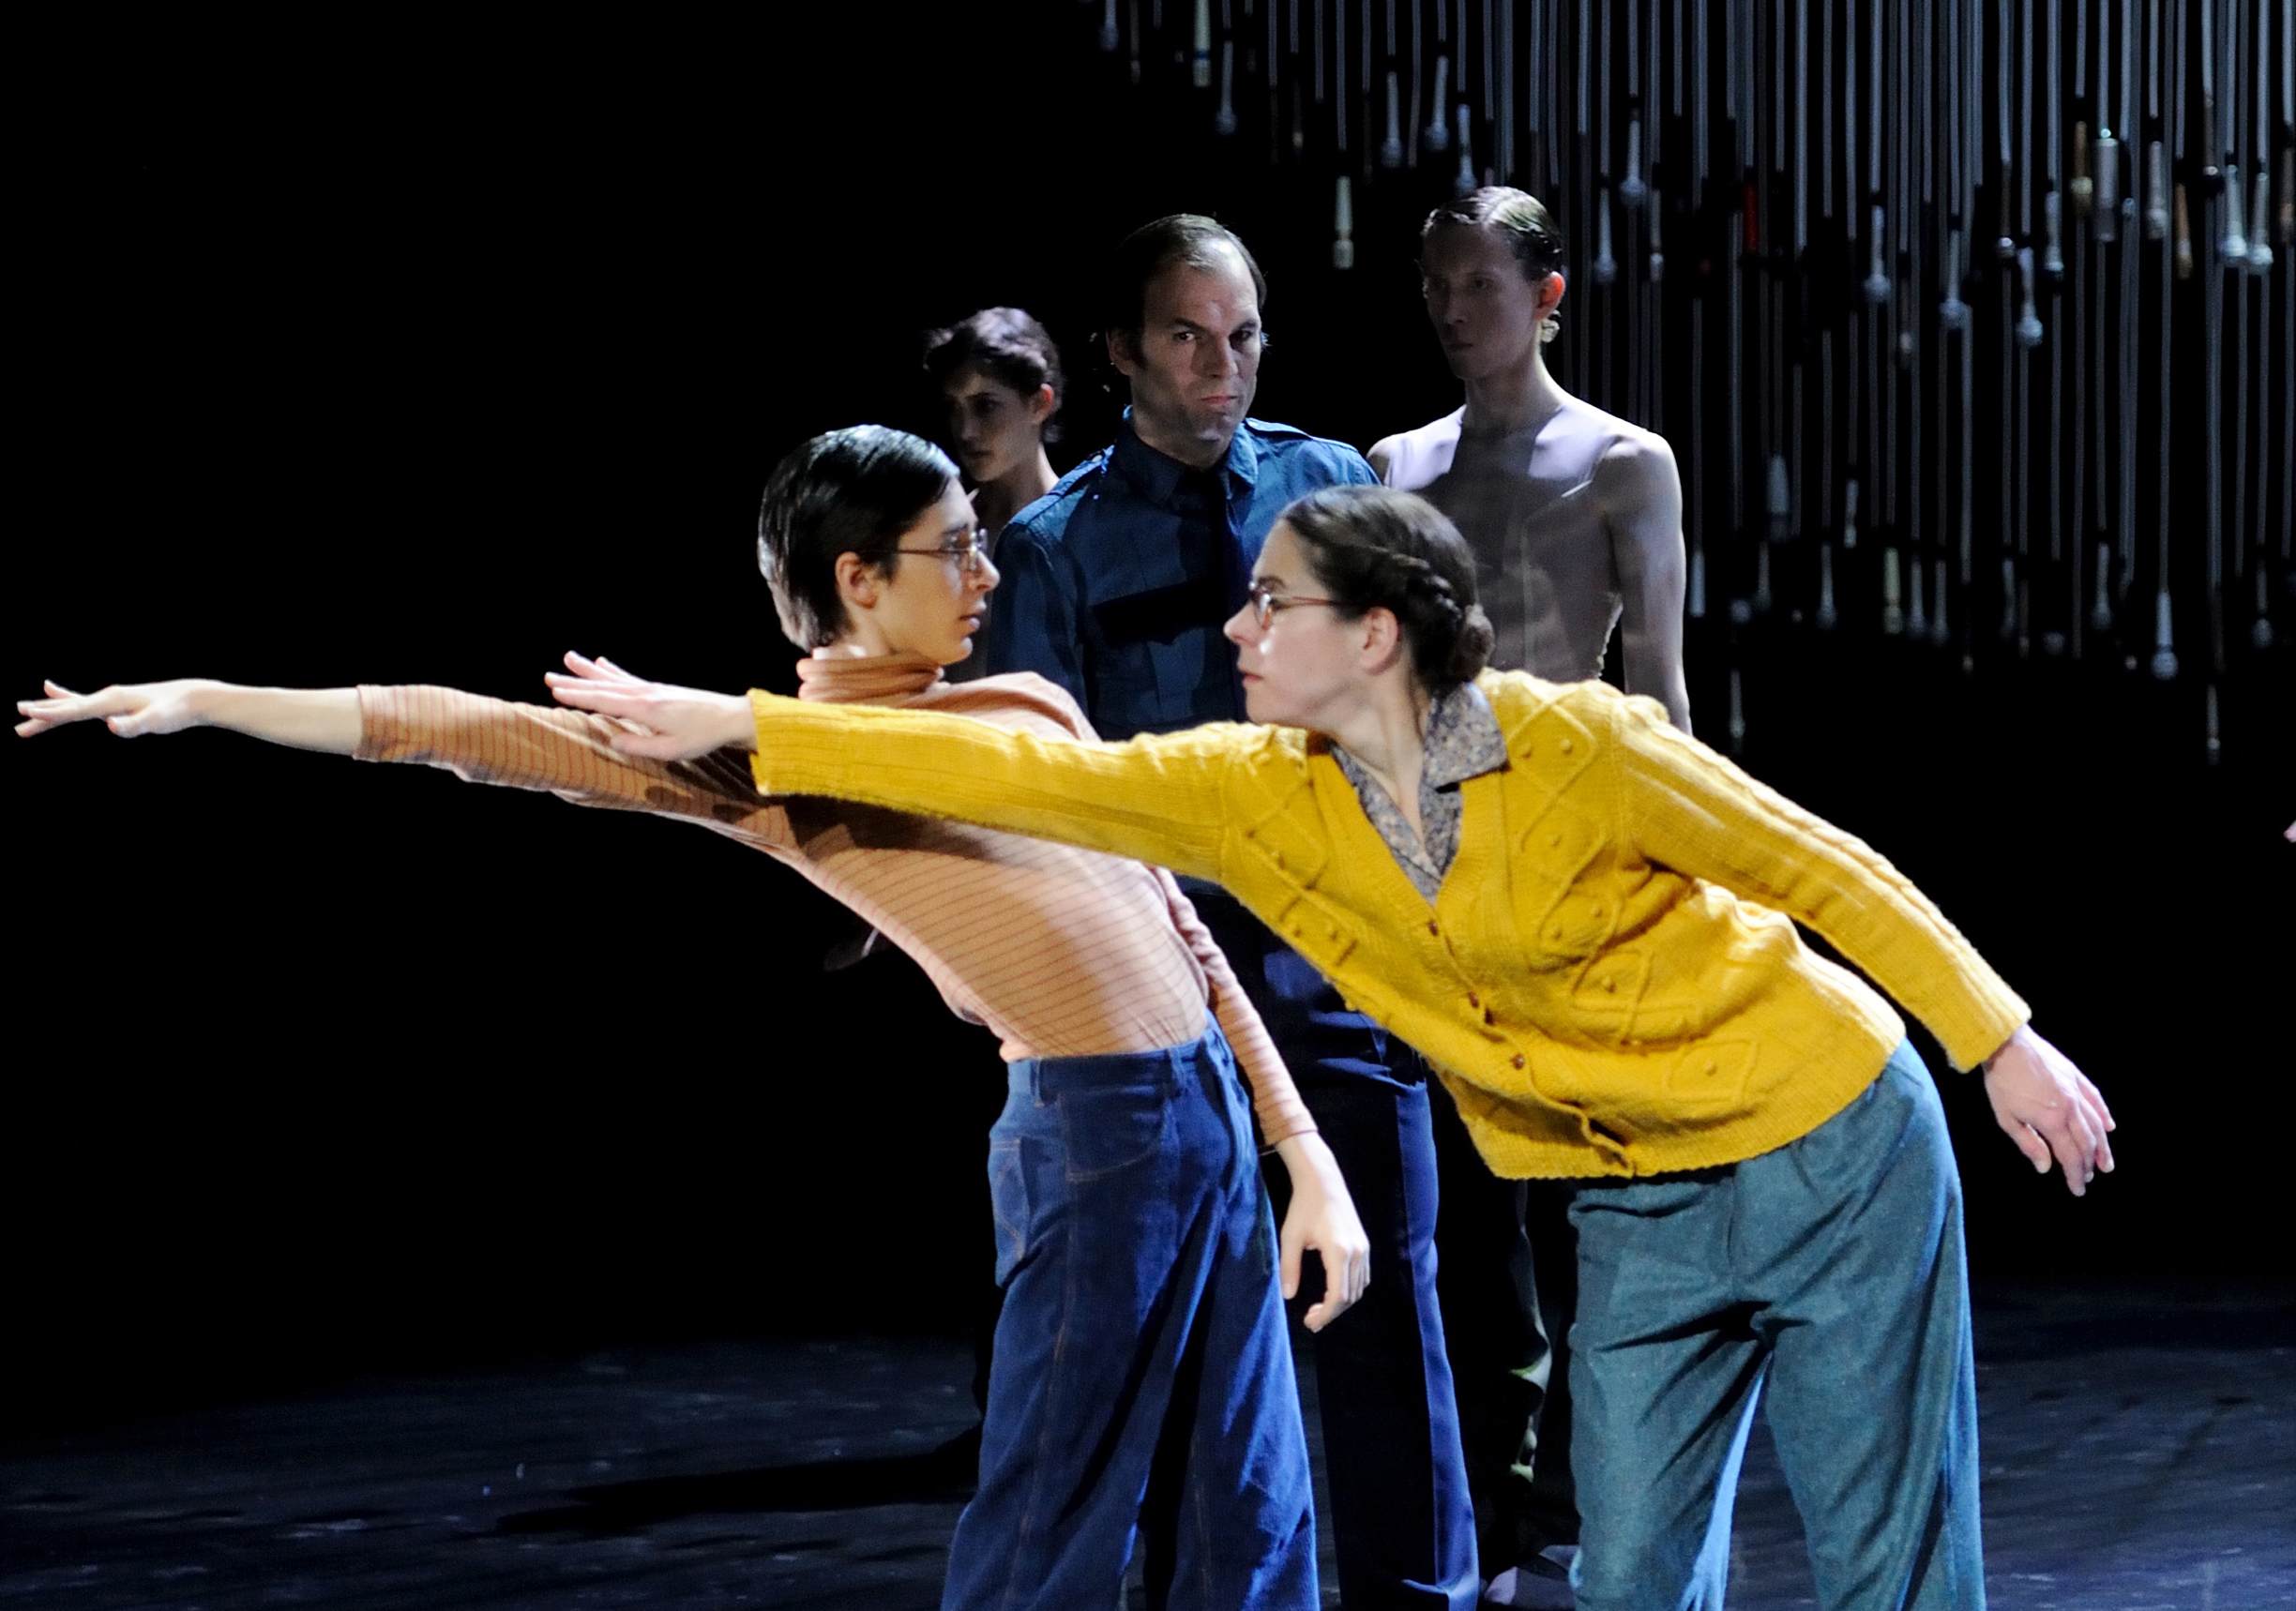 Alessandro Giaquinto, Jonas Fürstenau und Ute Hannig in "Dancer in the Dark", einem spartenübergreifenden Projekt am Staatstheater Stuttgart.